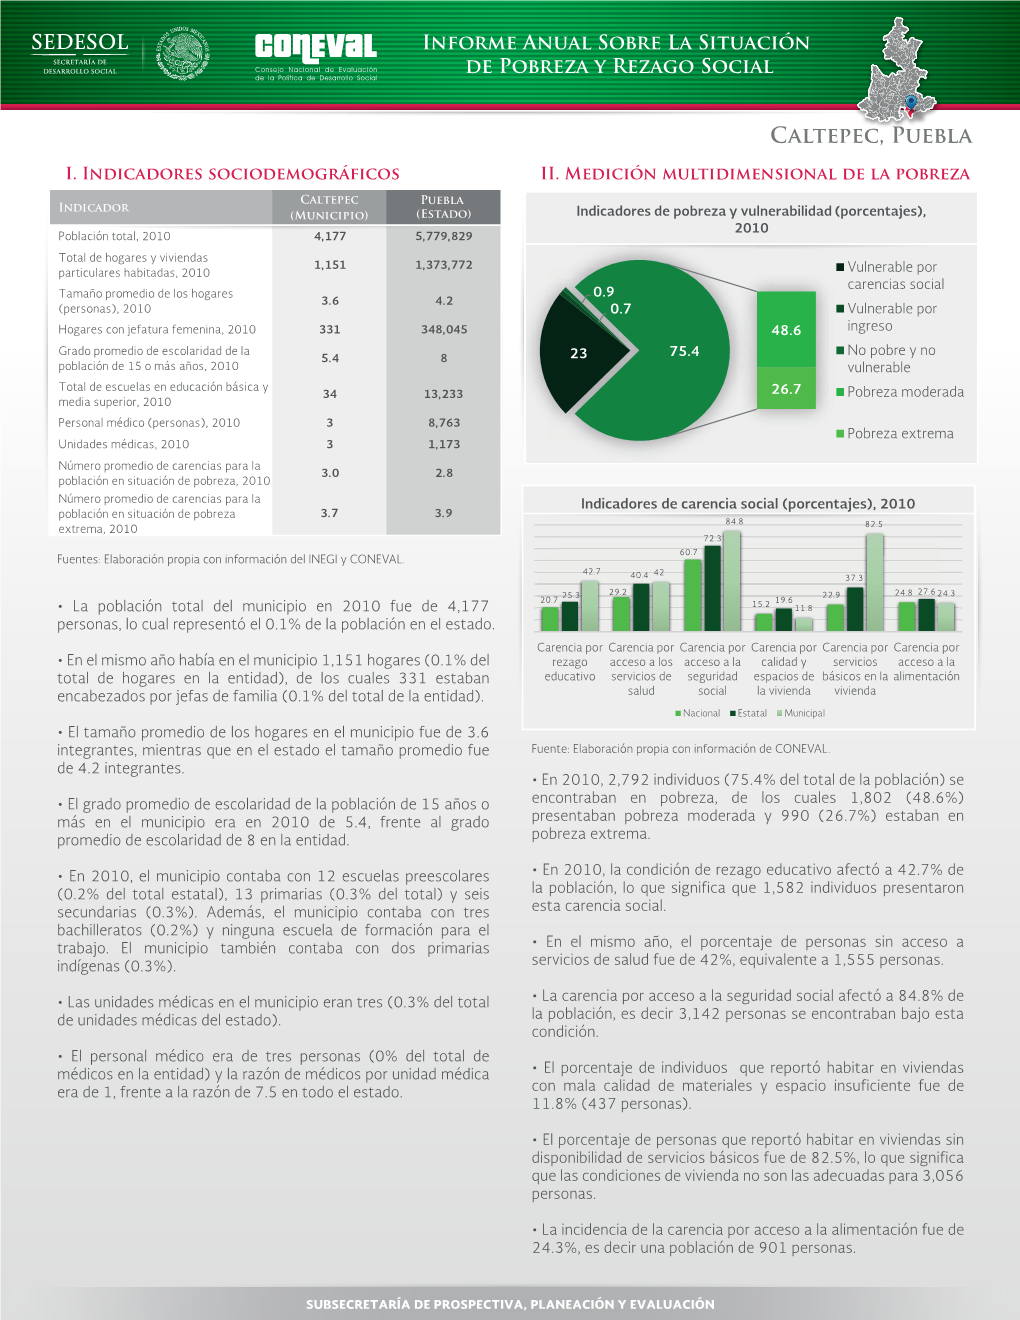 Caltepec, Puebla Informe Anual Sobre La Situación De Pobreza Y Rezago